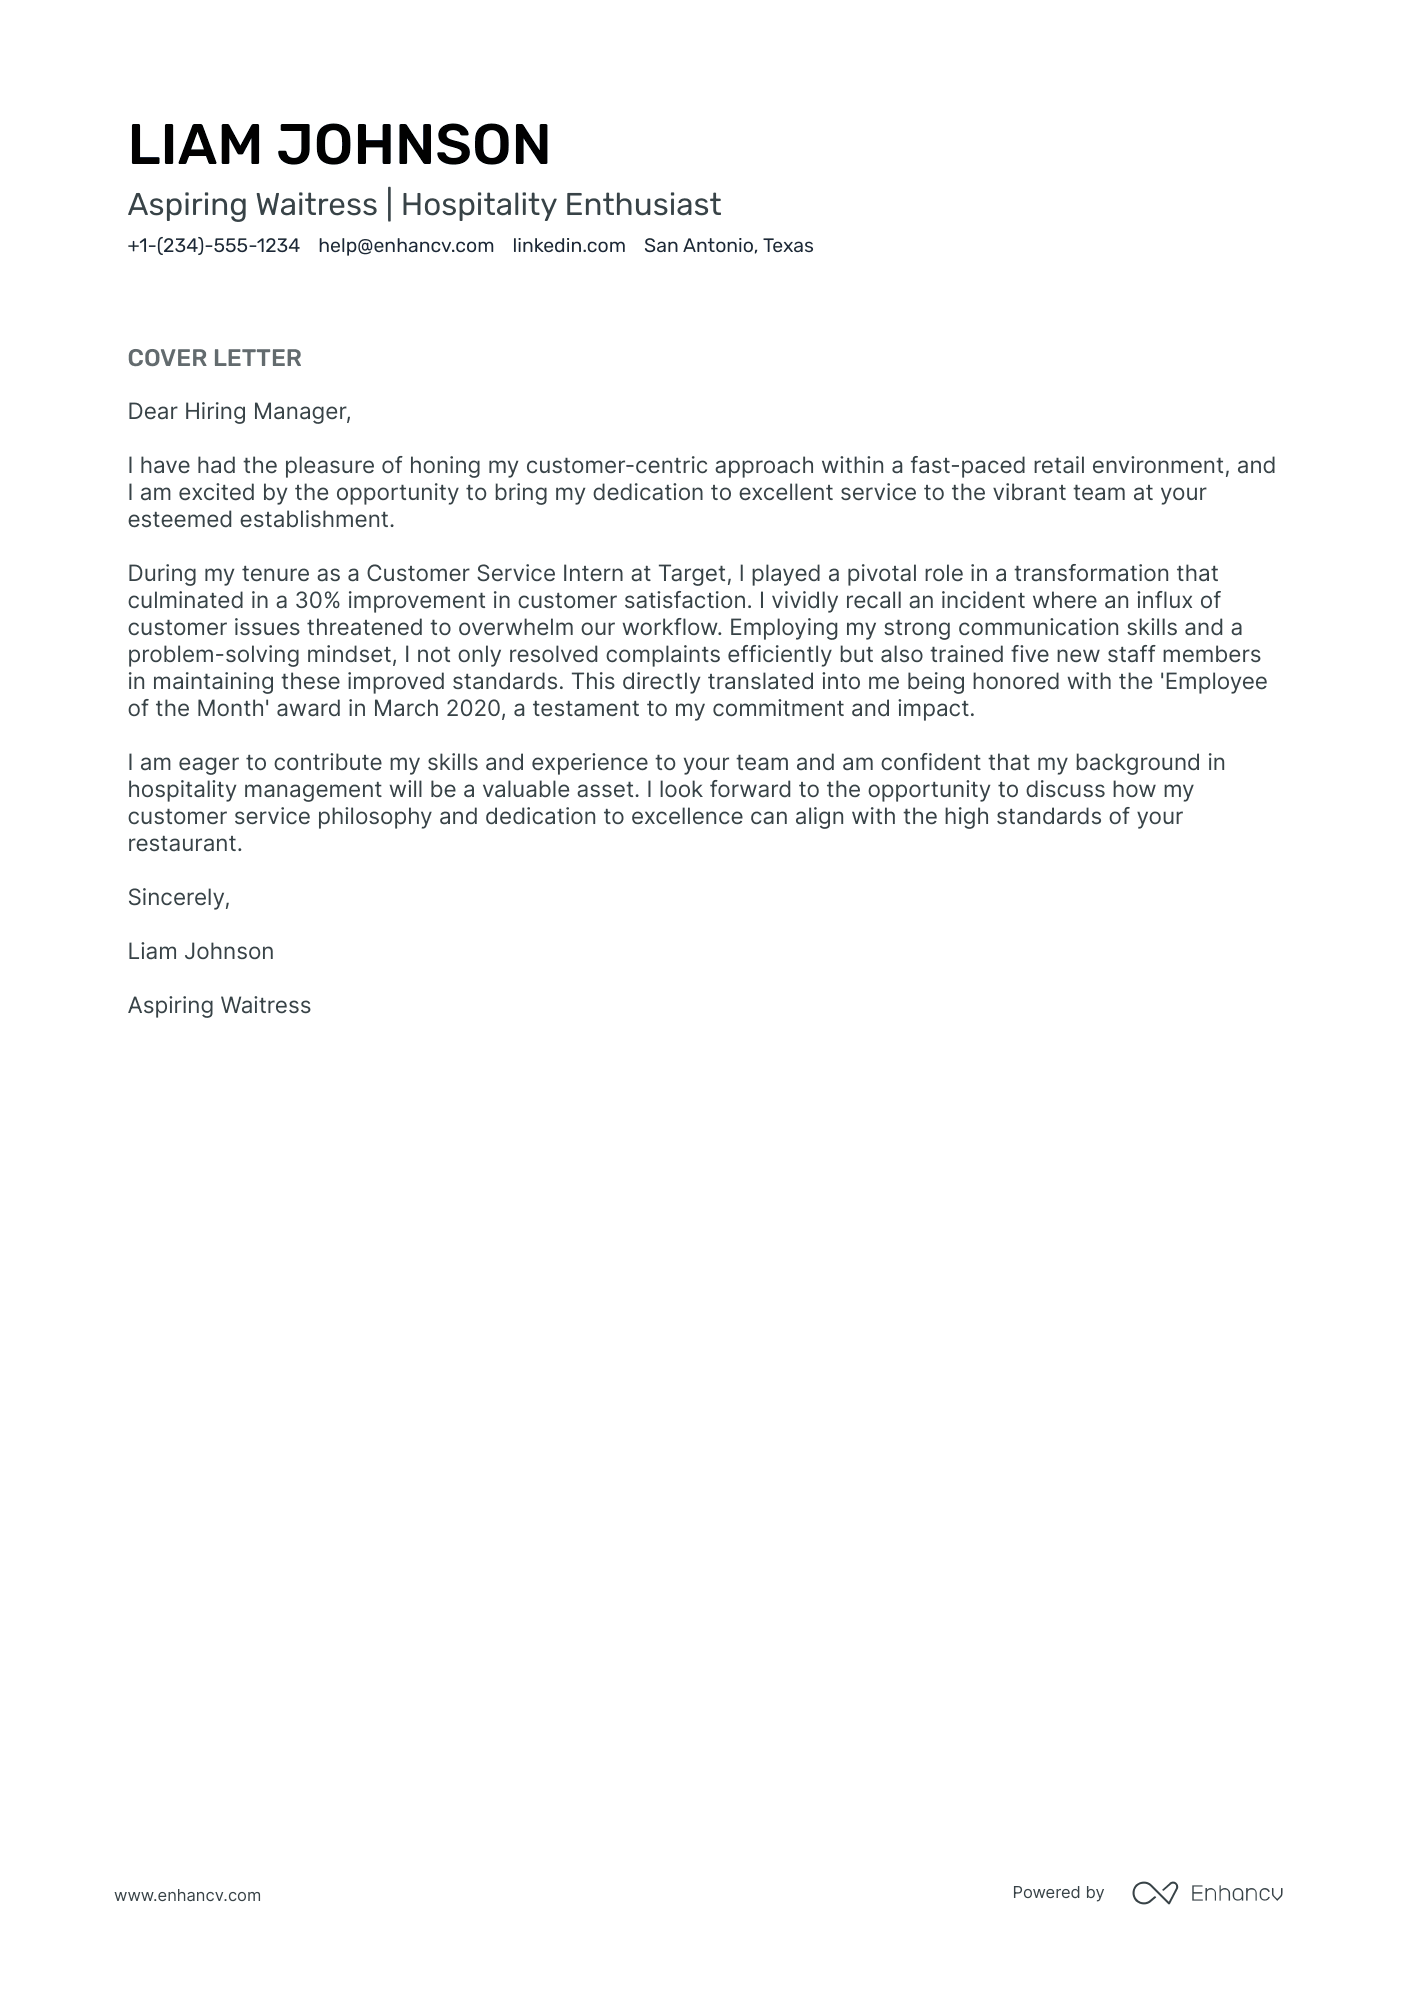 job application letter for waitress post